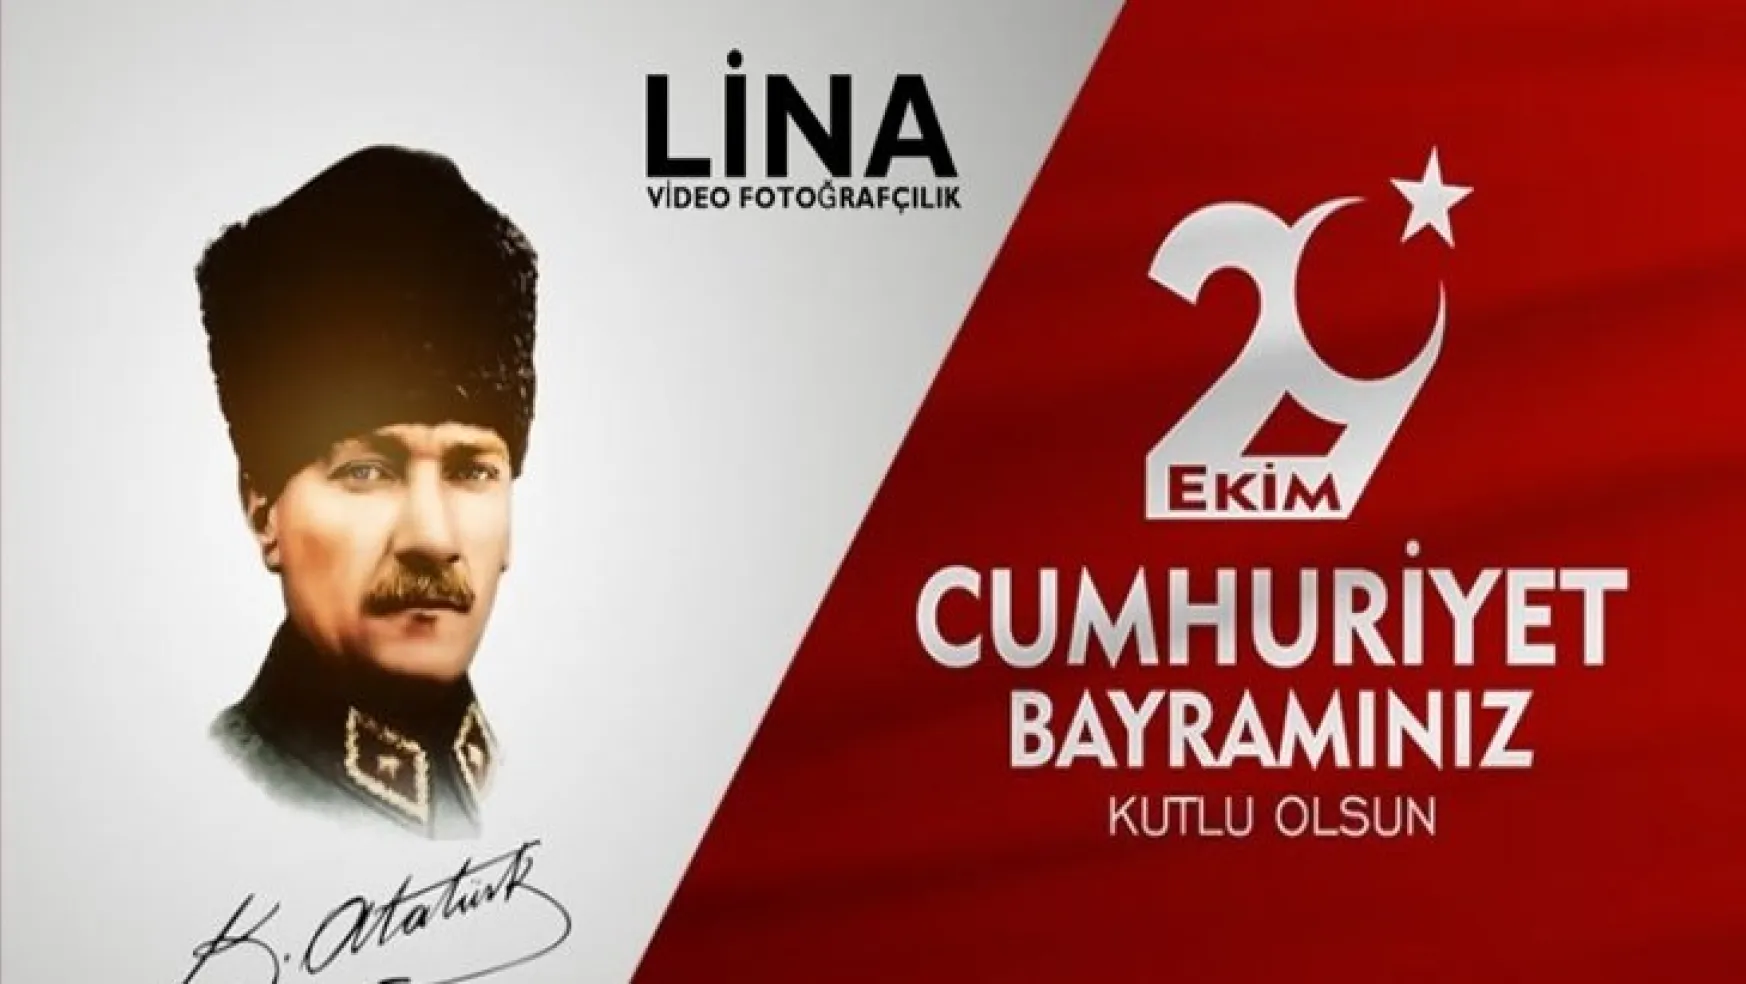 Lina Video Fotoğrafçılık'dan 29 Ekim Bayram Mesajı